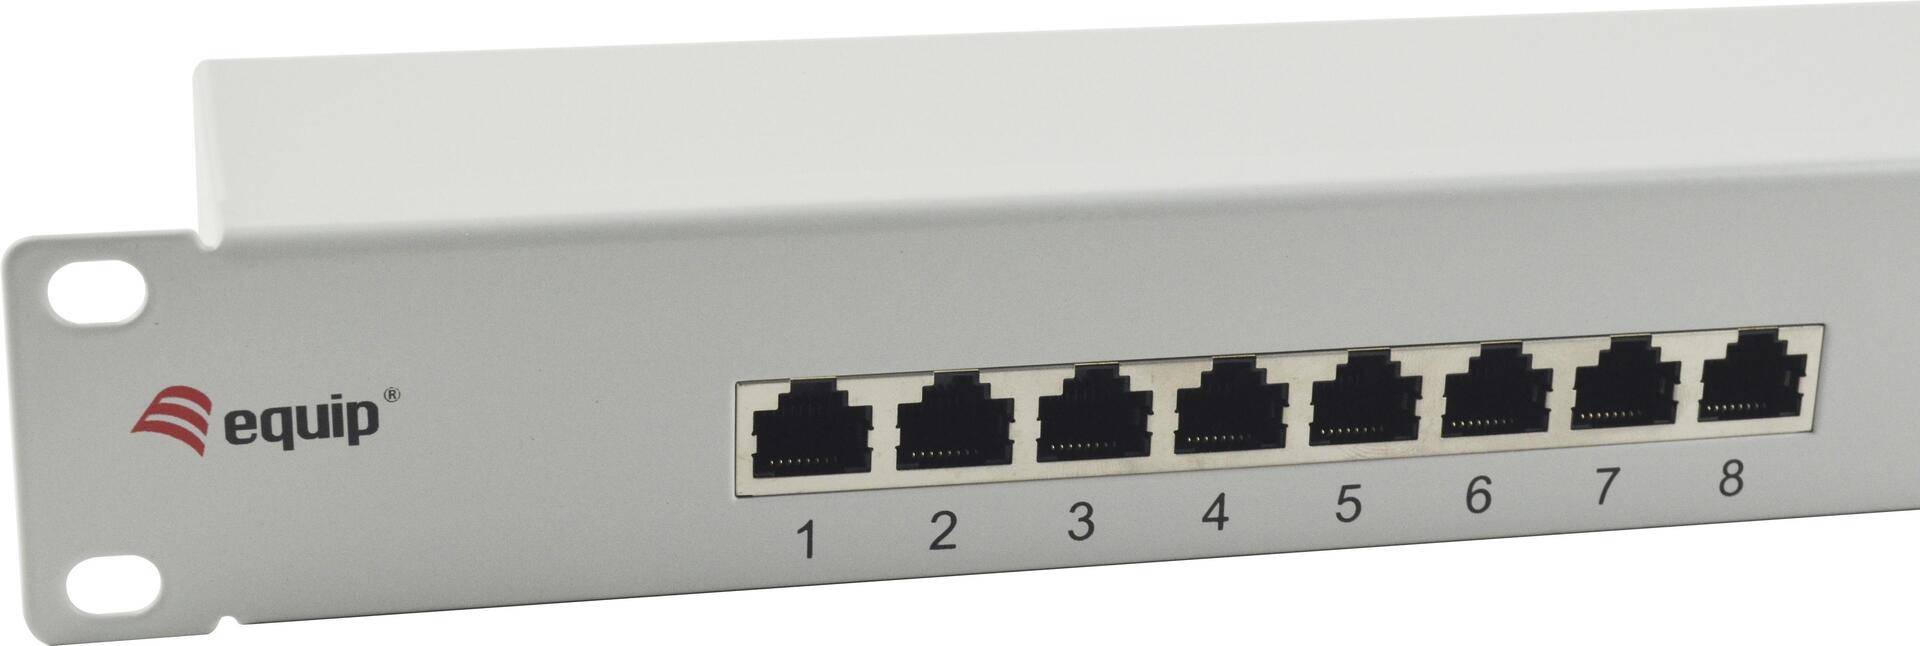 Equip 16-Port Cat.6 Ungeschirmtes Patch Panel - Hellgrau - 10/100/1000Base-T(X) - Gigabit Ethernet - 1000 Mbit/s - RJ-45 - Cat6 - Grau (326317) von equip